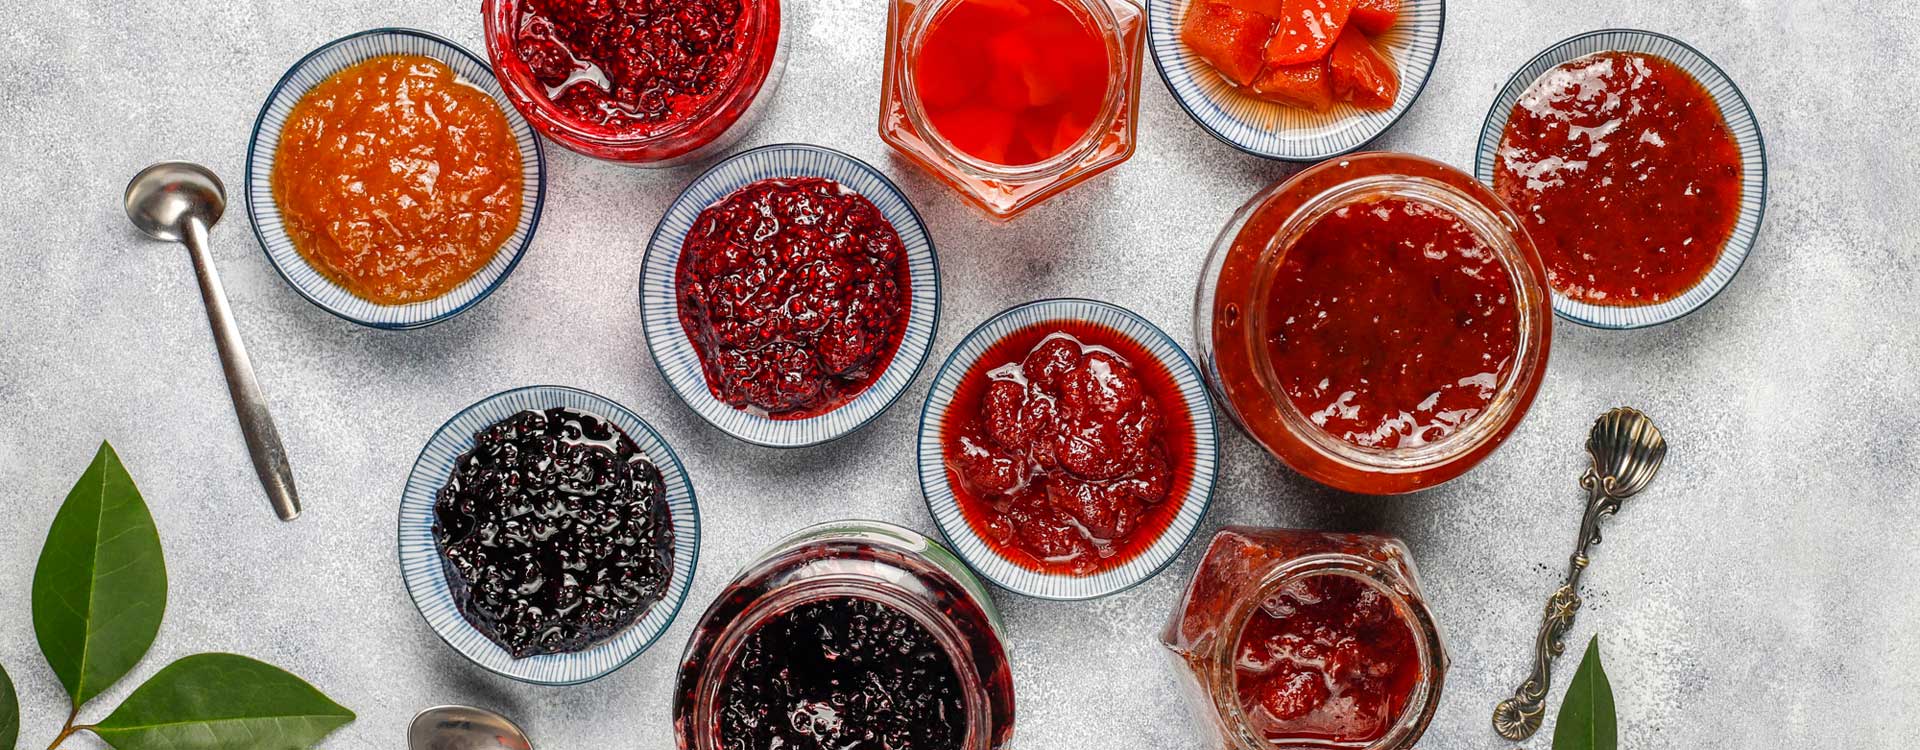 Marmelade kochen – verschiedenen Marmeladen, Konfitüren und Gelees